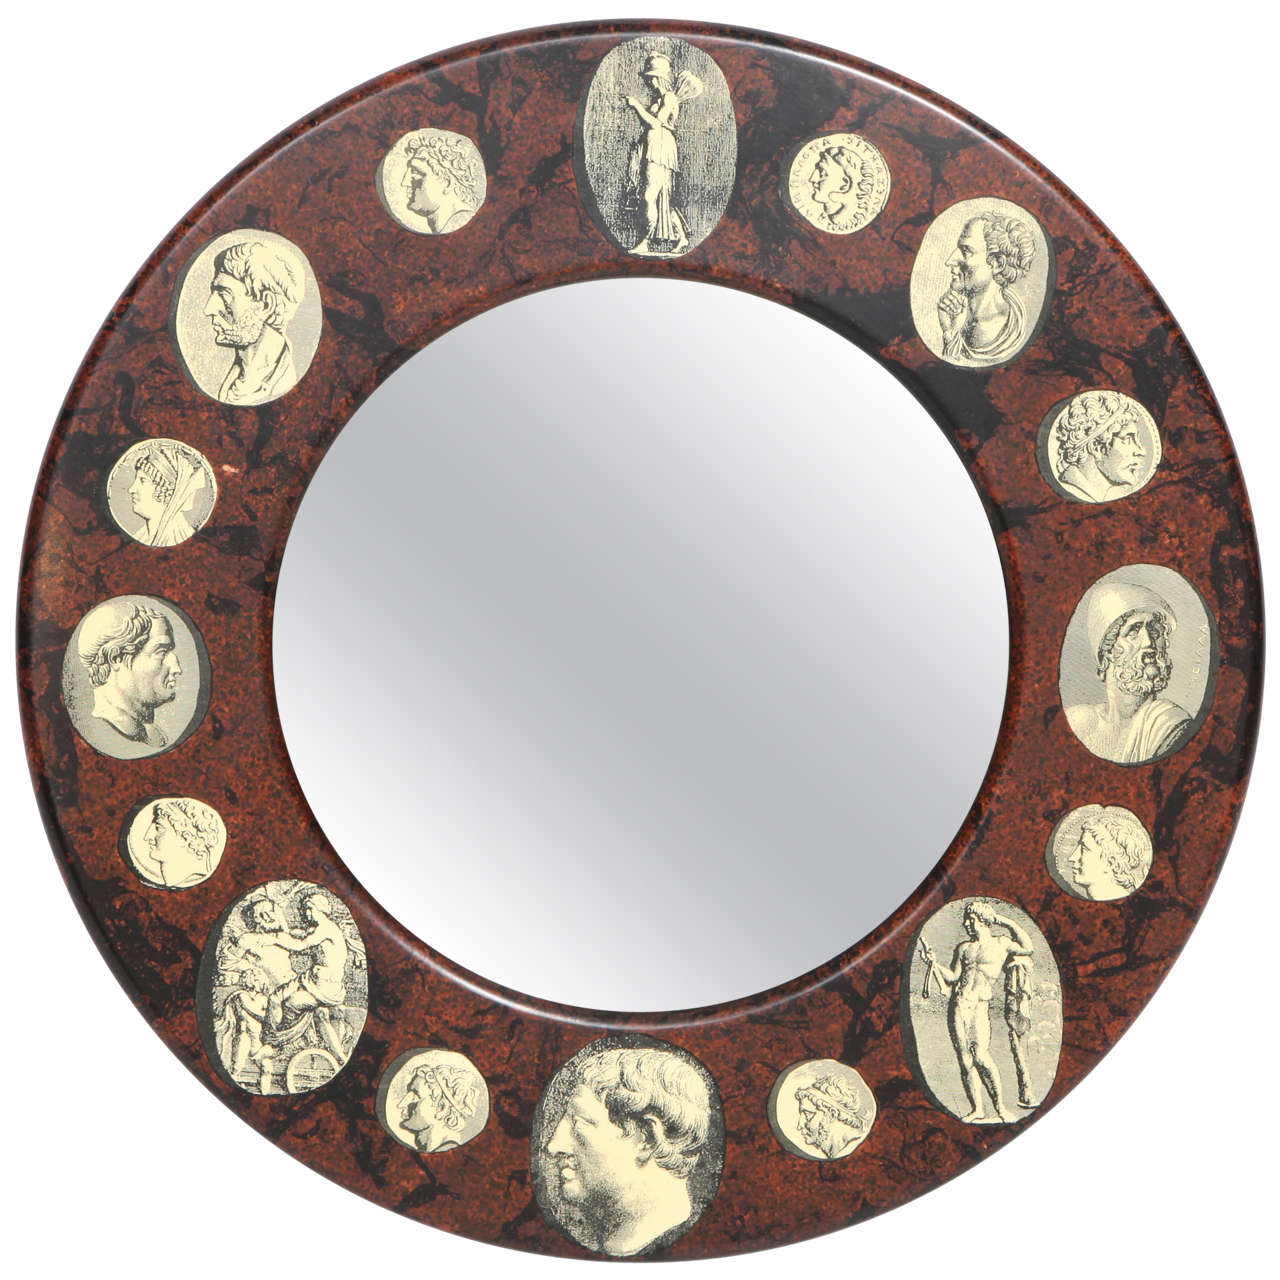 Rare mirror designed by Piero Fornasetti